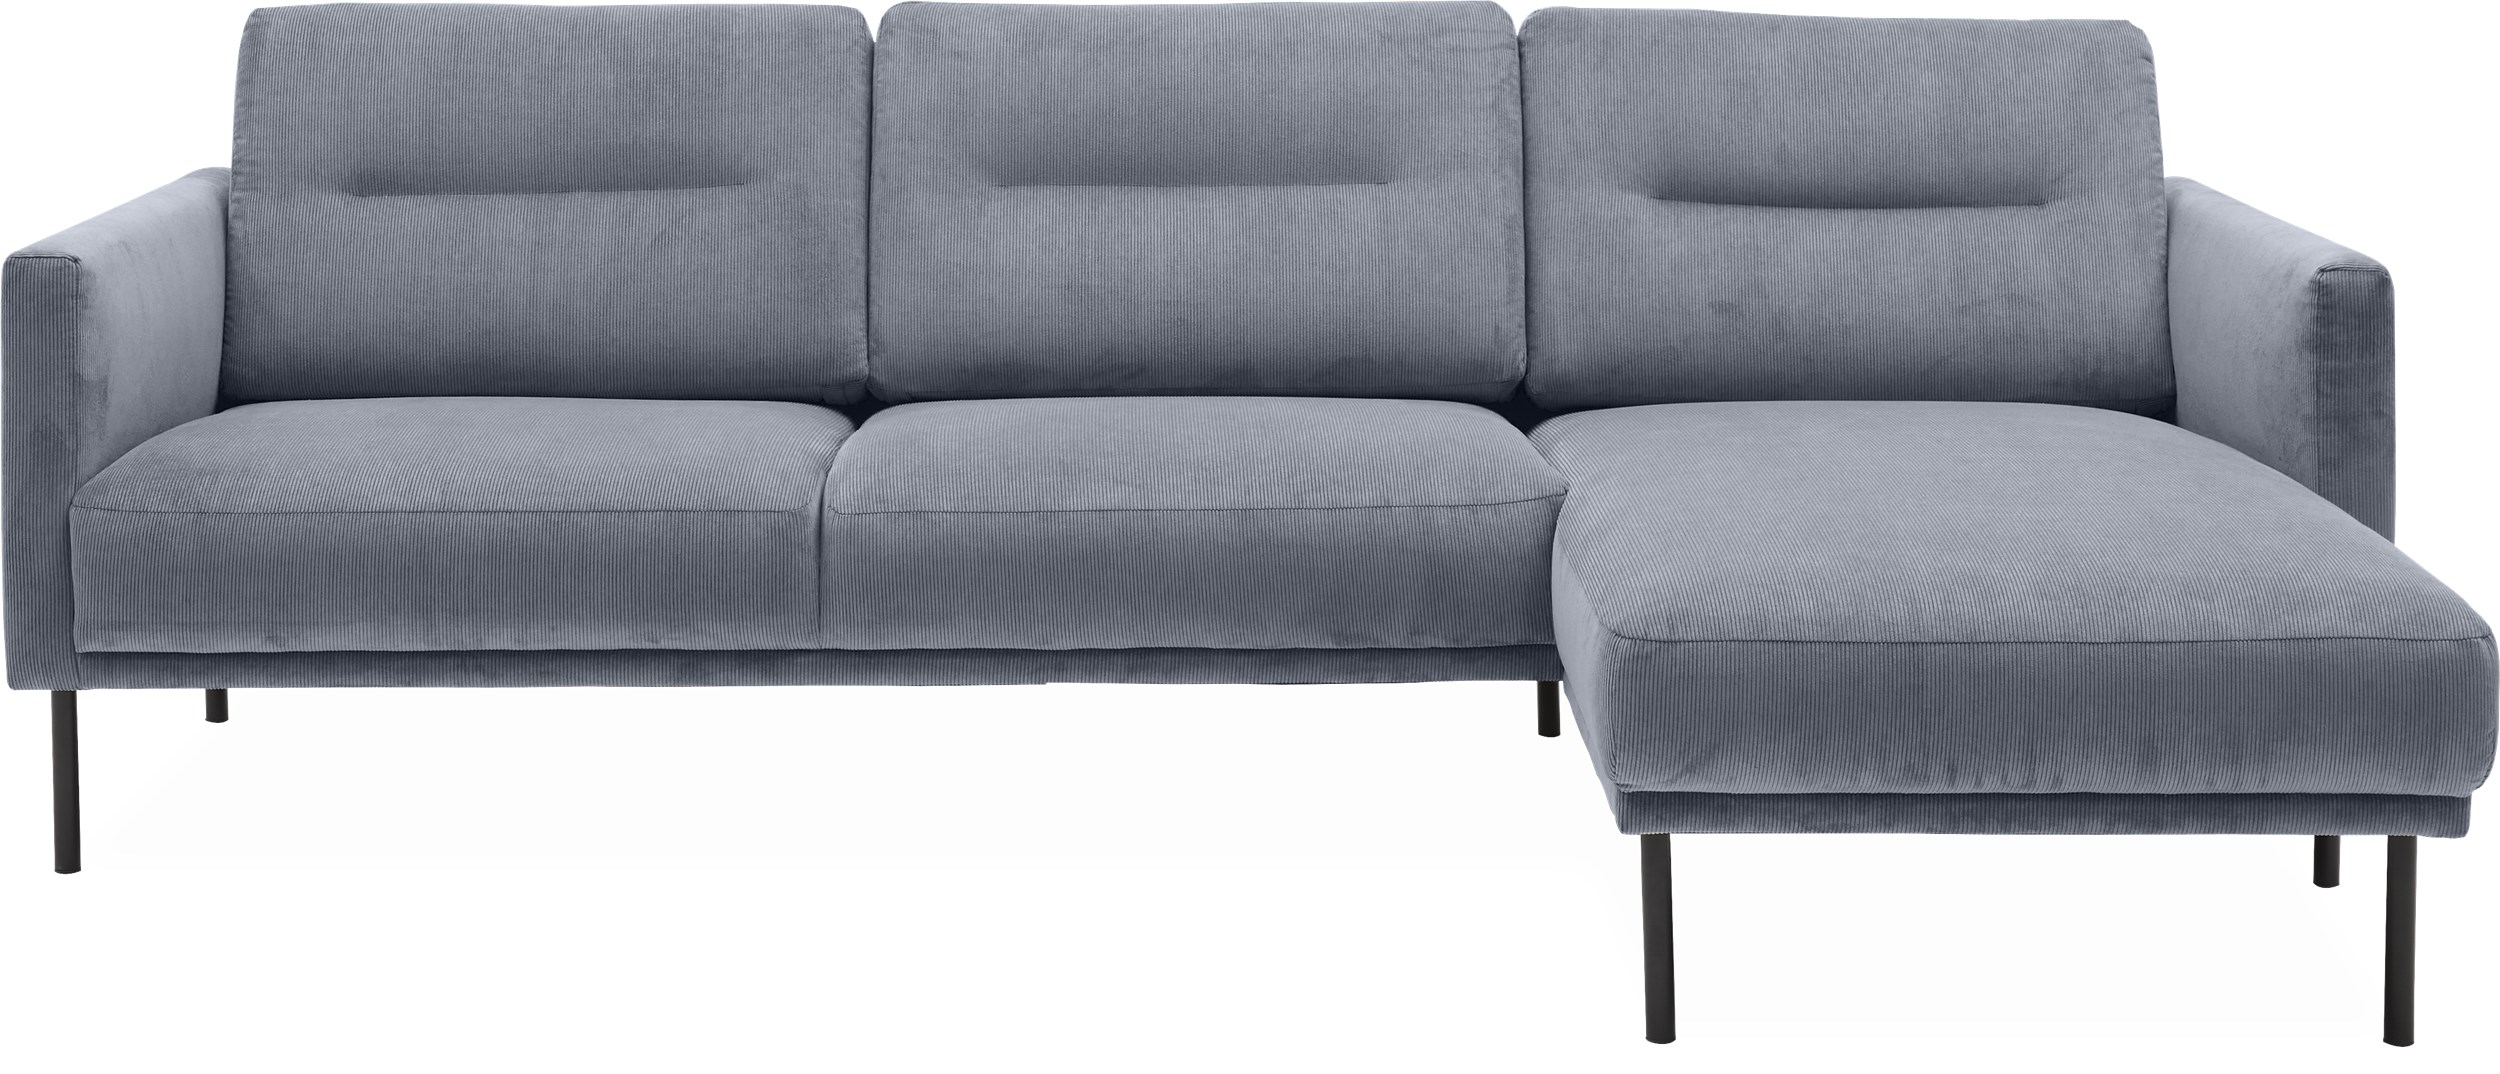 Larvik højrevendt sofa med chaiselong - Wave 40 Slate grey stof og ben i sortlakeret metal